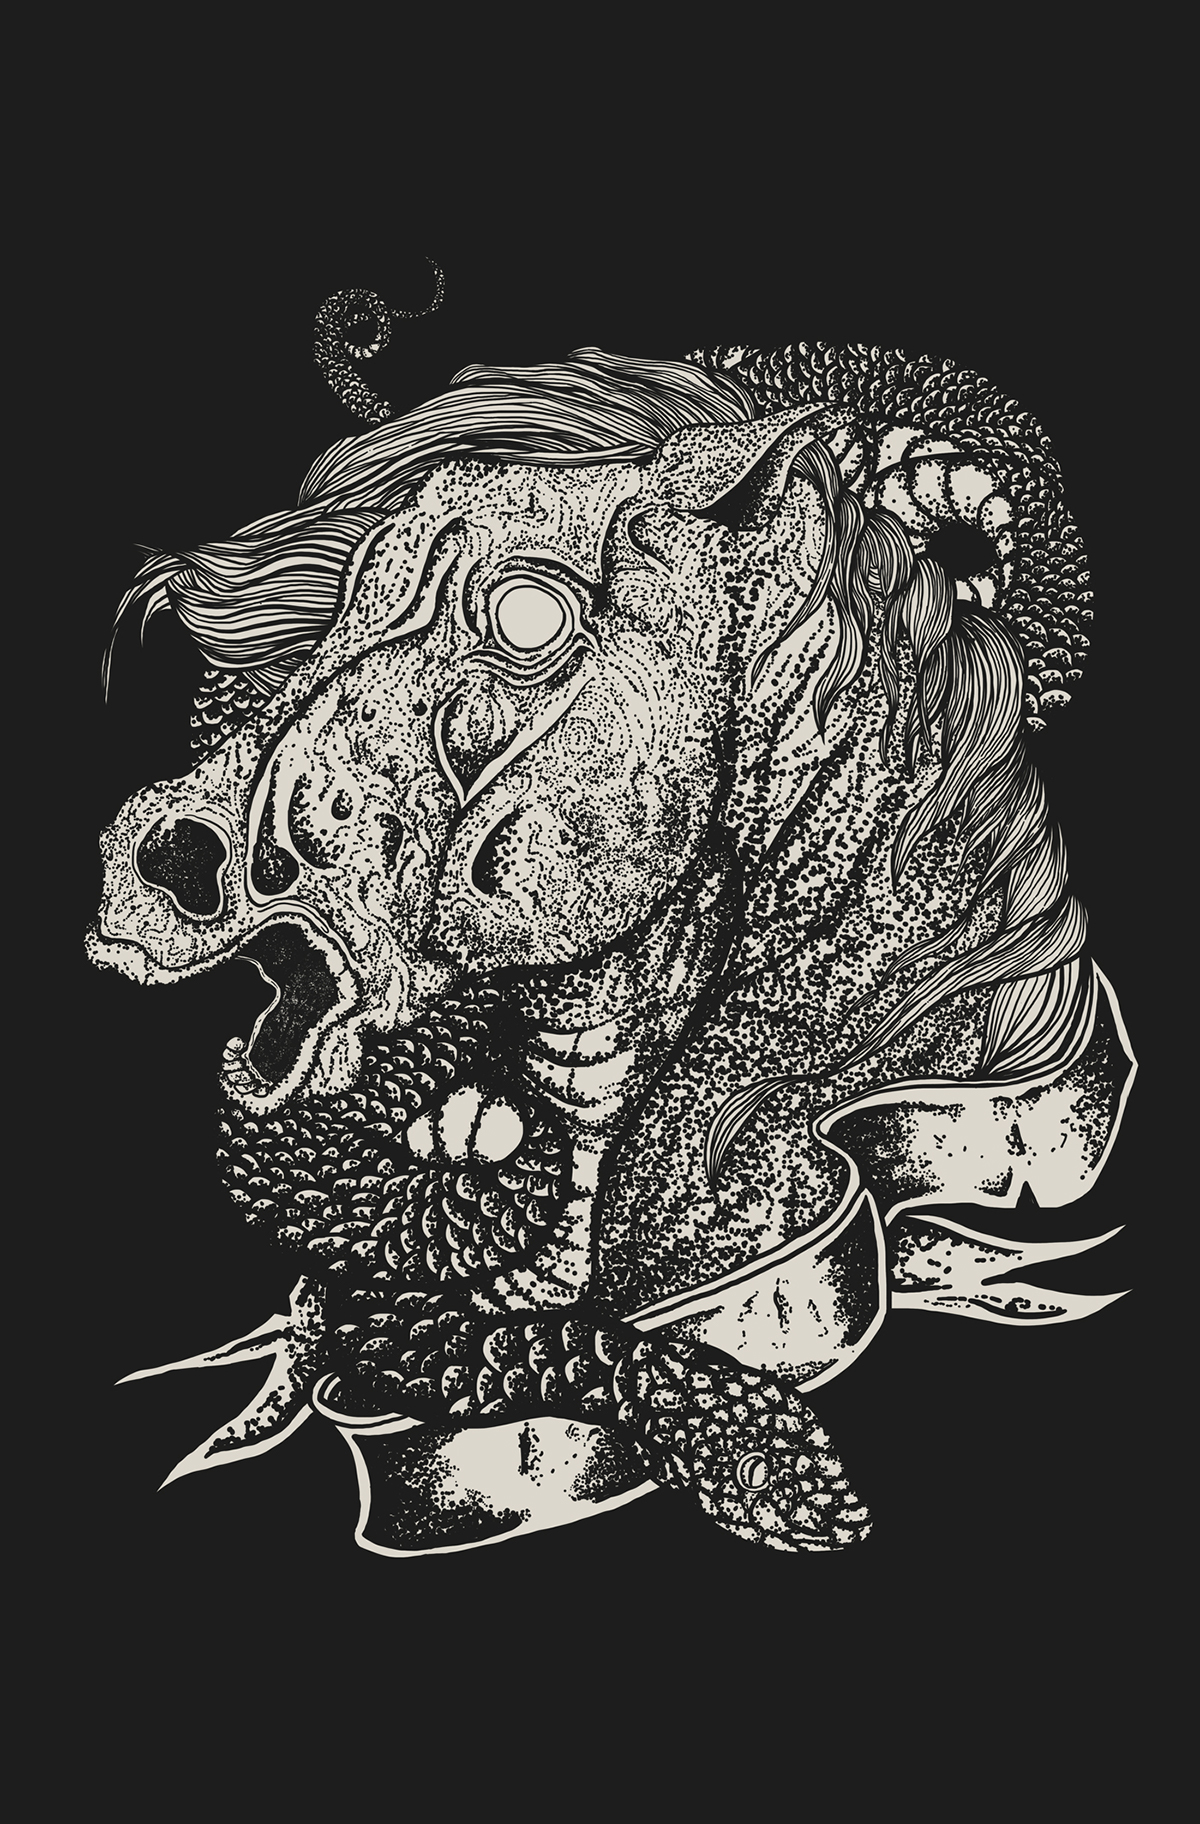 artwork dotwork dark cult occult horror black skull Rooster horse snake nikita kaun Sunturnsintowater